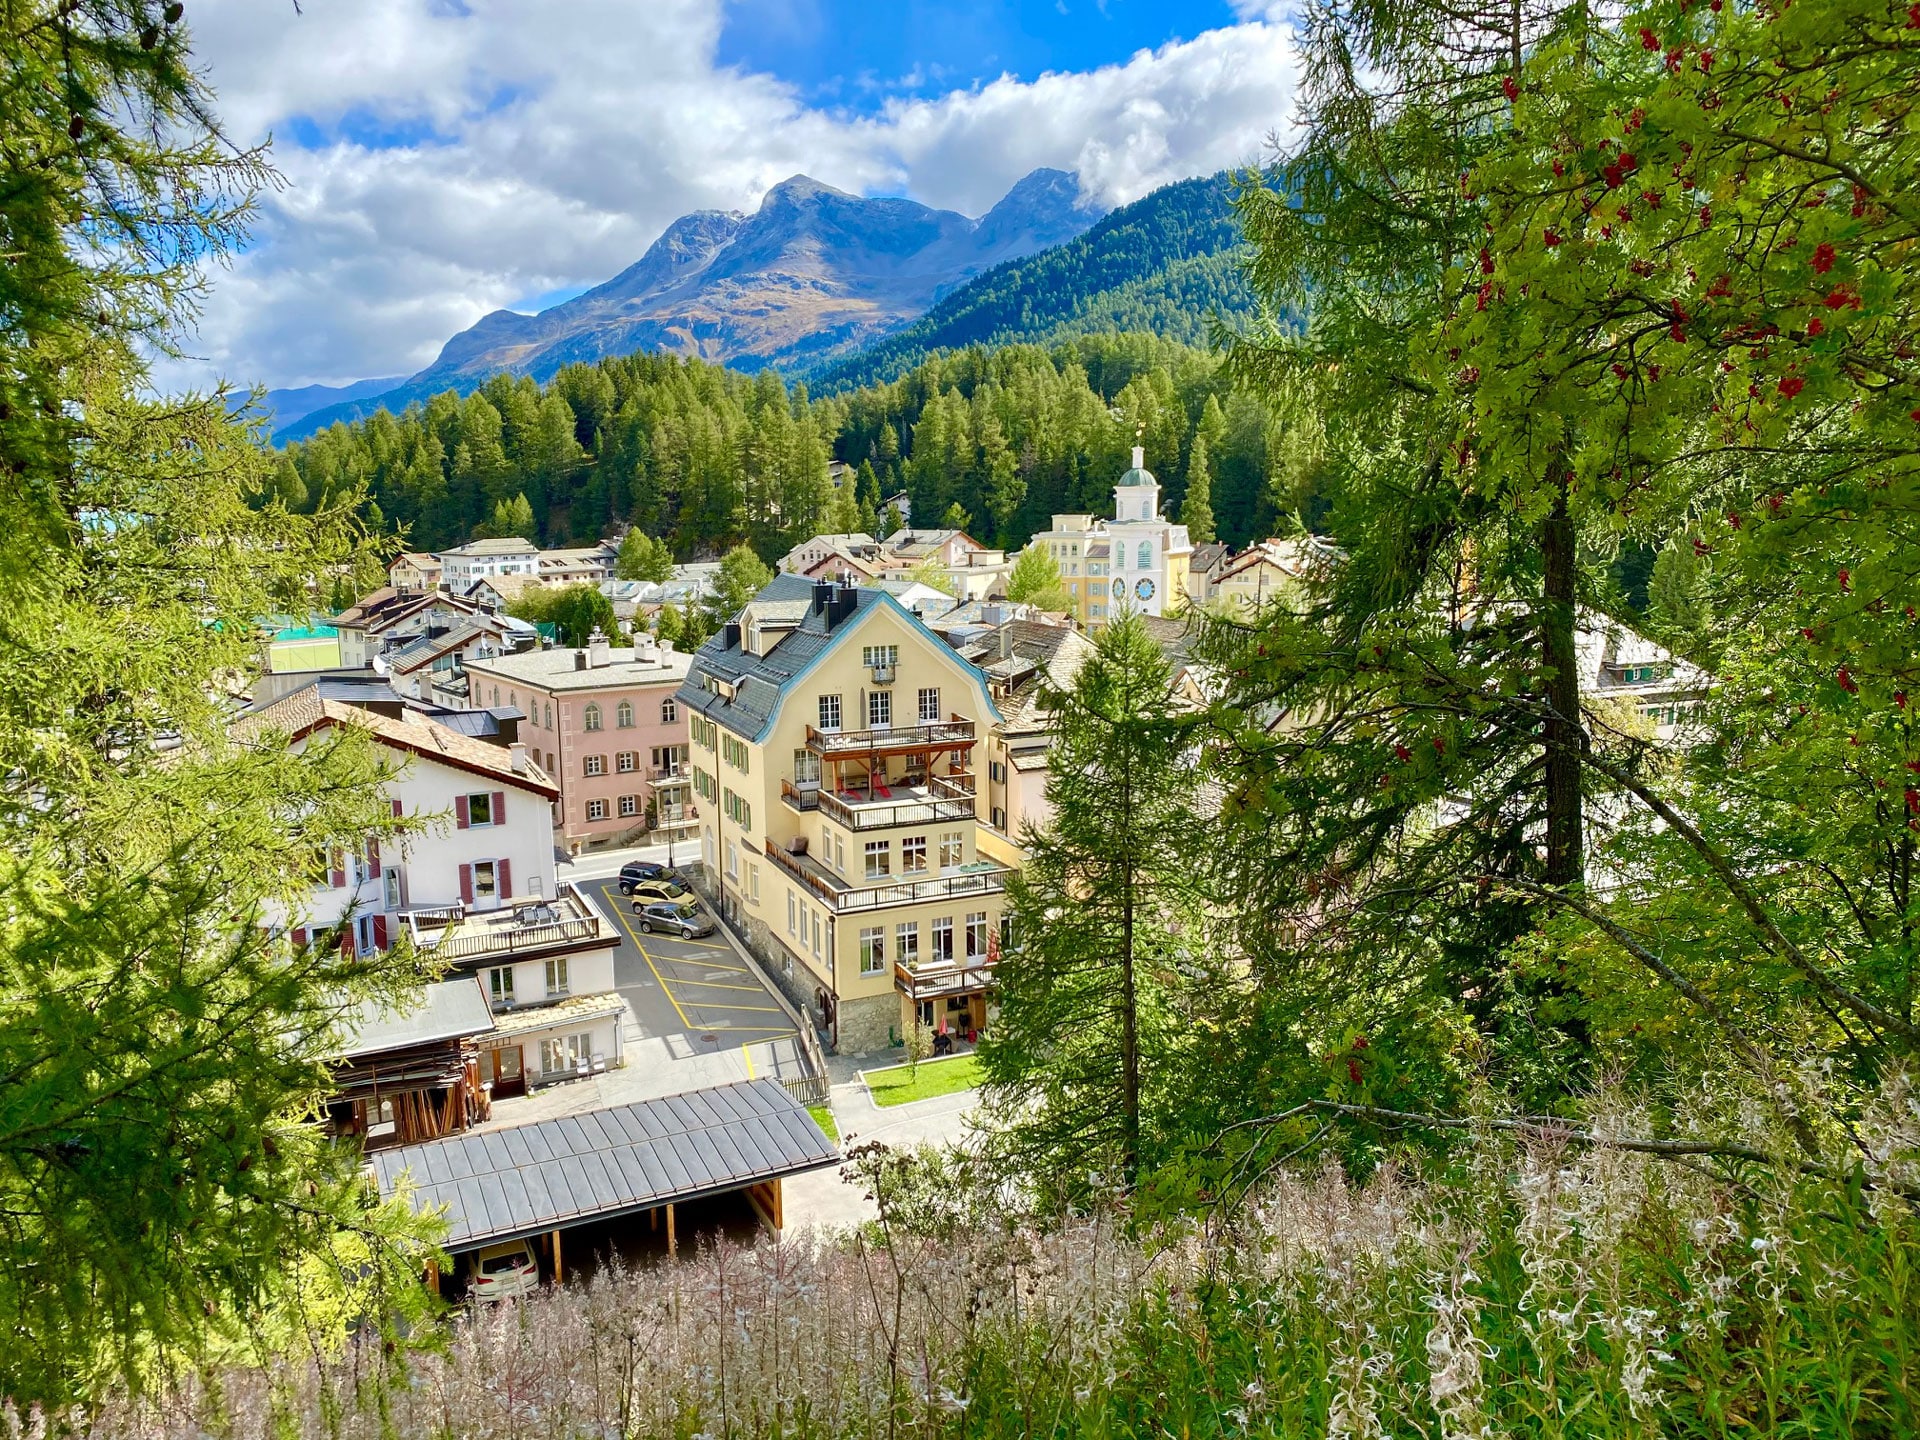 Graubünden 2 Days Private Tour – Davos, St.Moritz & it’s stunning nature (Zurich)